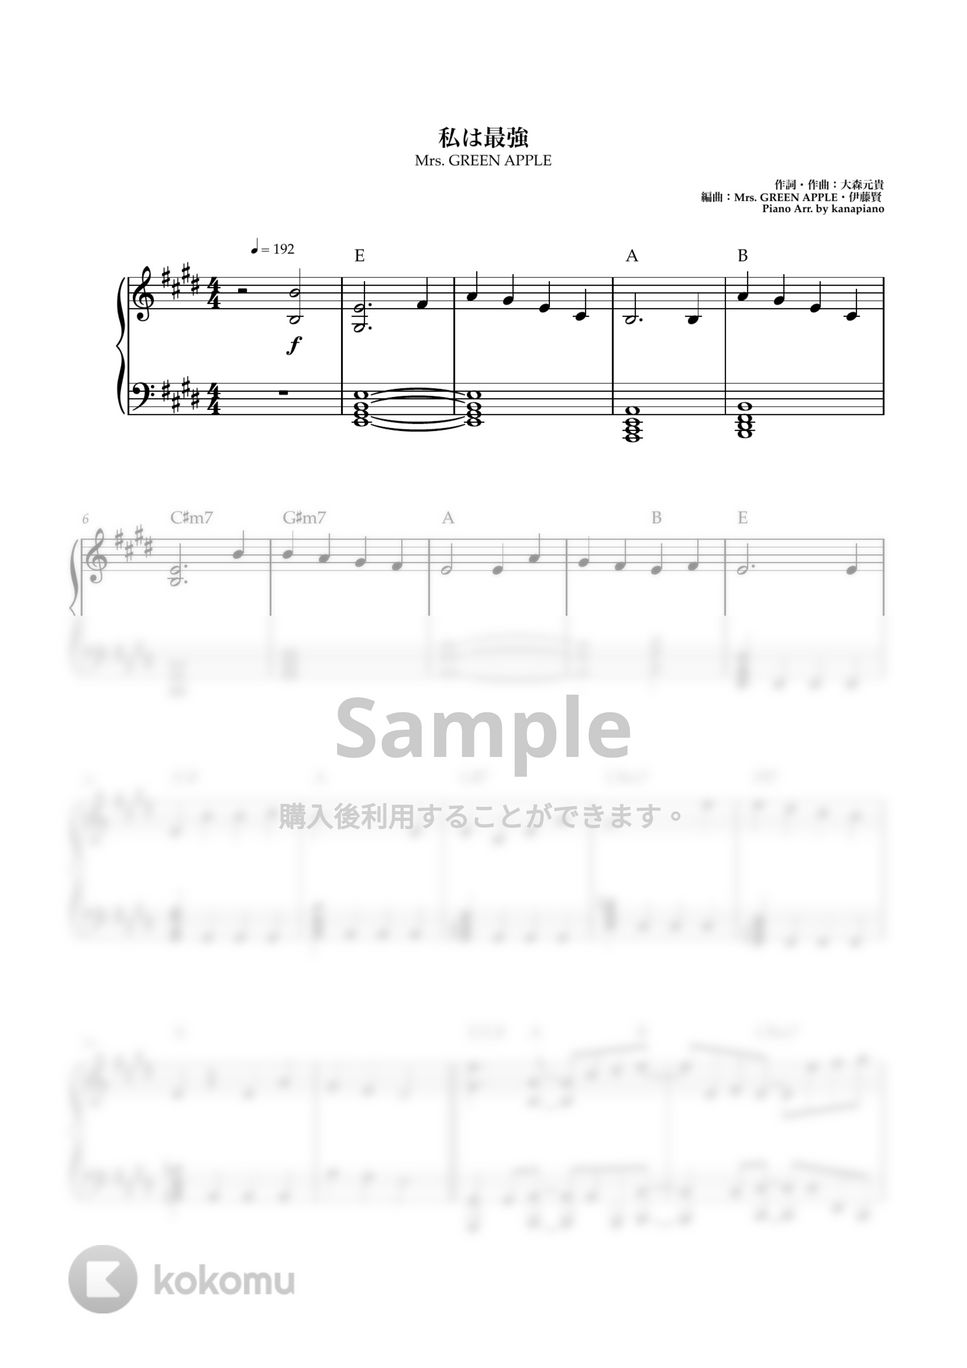 Mrs. GREEN APPLE - 私は最強 (ピアノソロ/私は最強/Mrs. GREEN APPLE/ONE PIECE FILM RED) by kanapiano